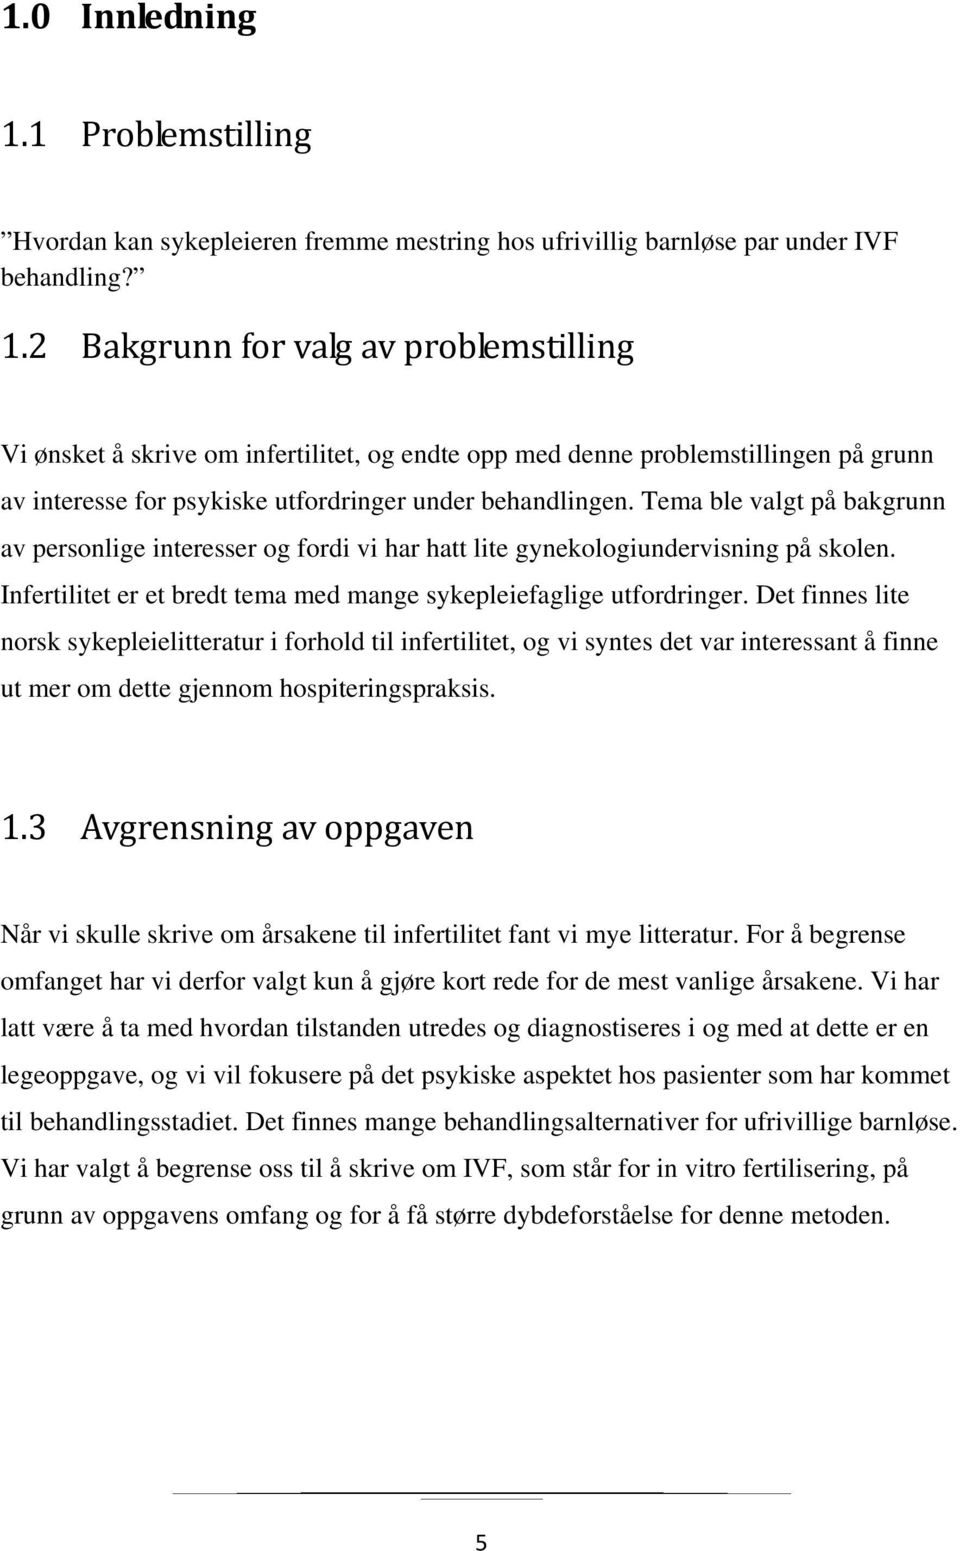 Det finnes lite norsk sykepleielitteratur i forhold til infertilitet, og vi syntes det var interessant å finne ut mer om dette gjennom hospiteringspraksis. 1.